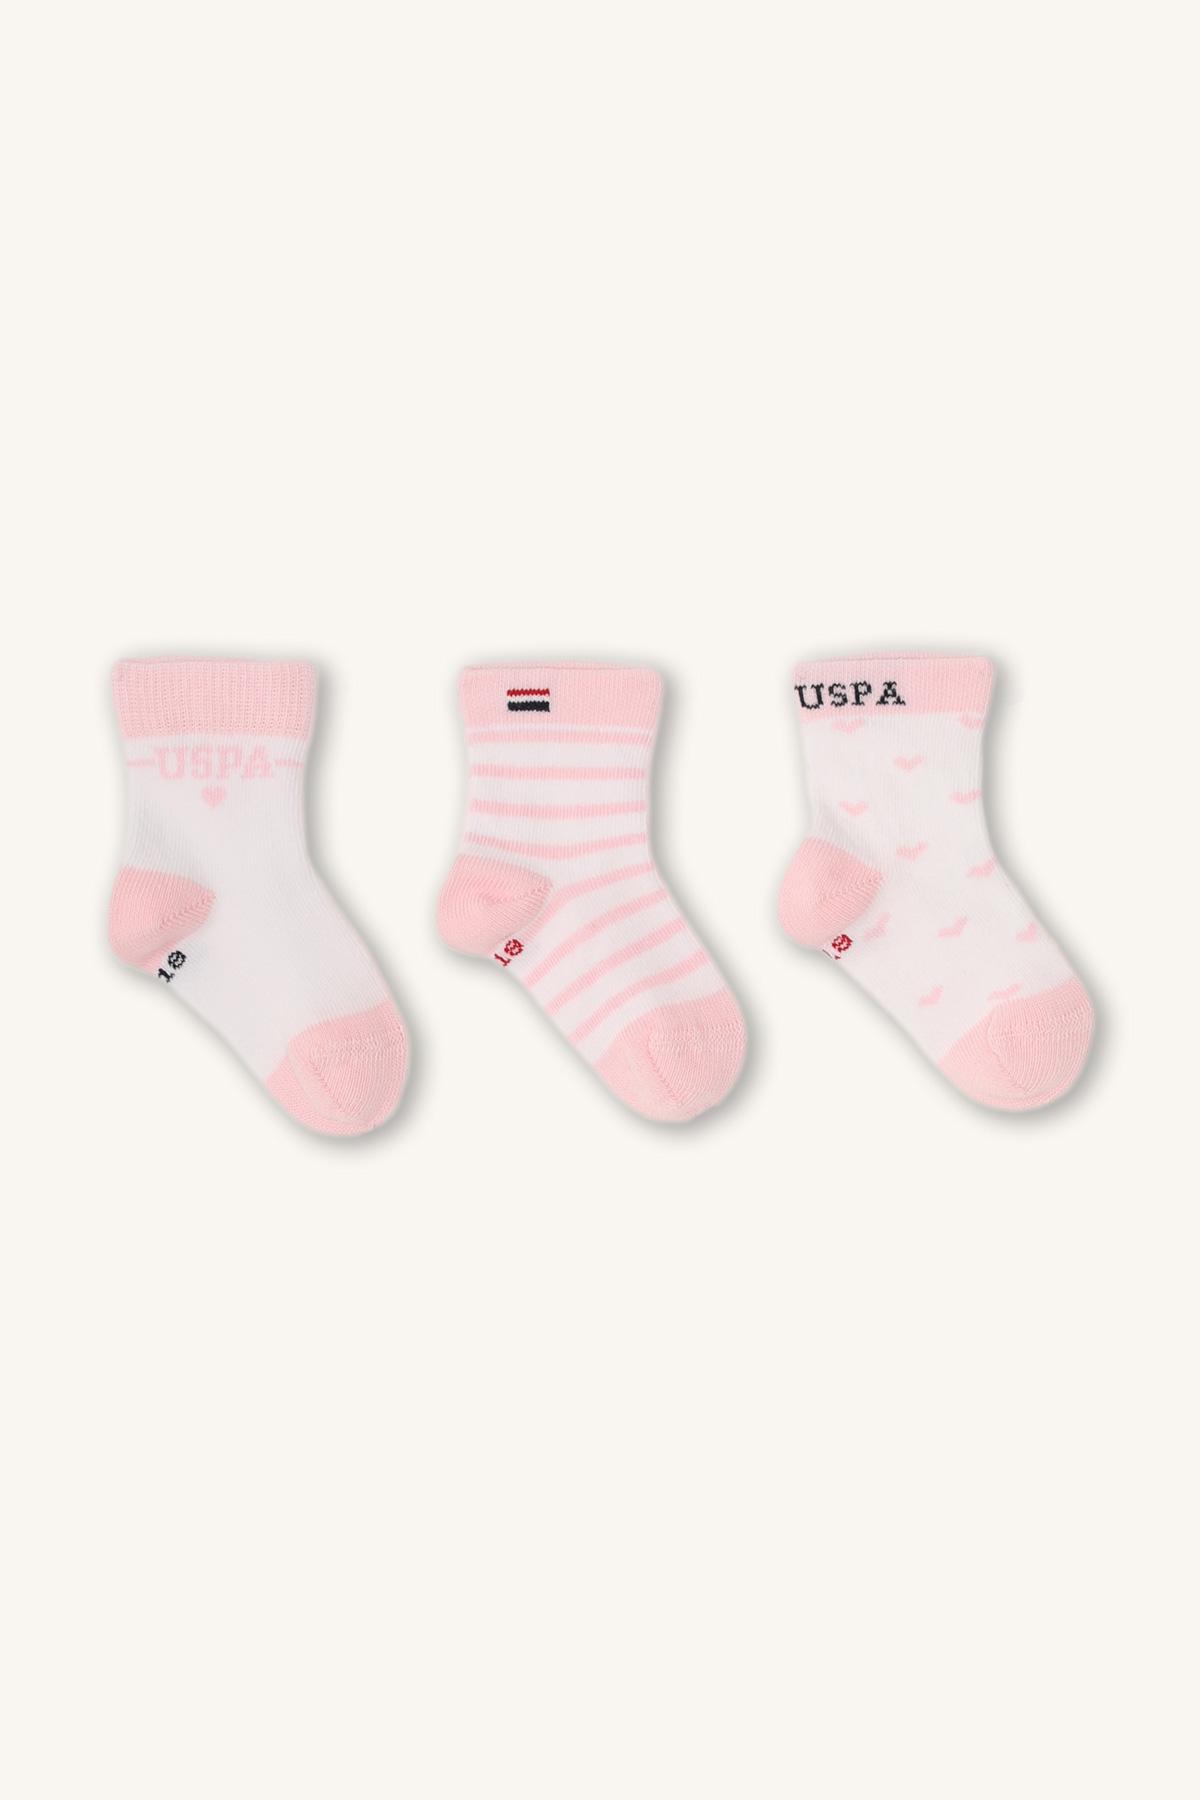 Selected image for U.S. POLO ASSN. Čarape za devojčice USB947, 3 para, Roze